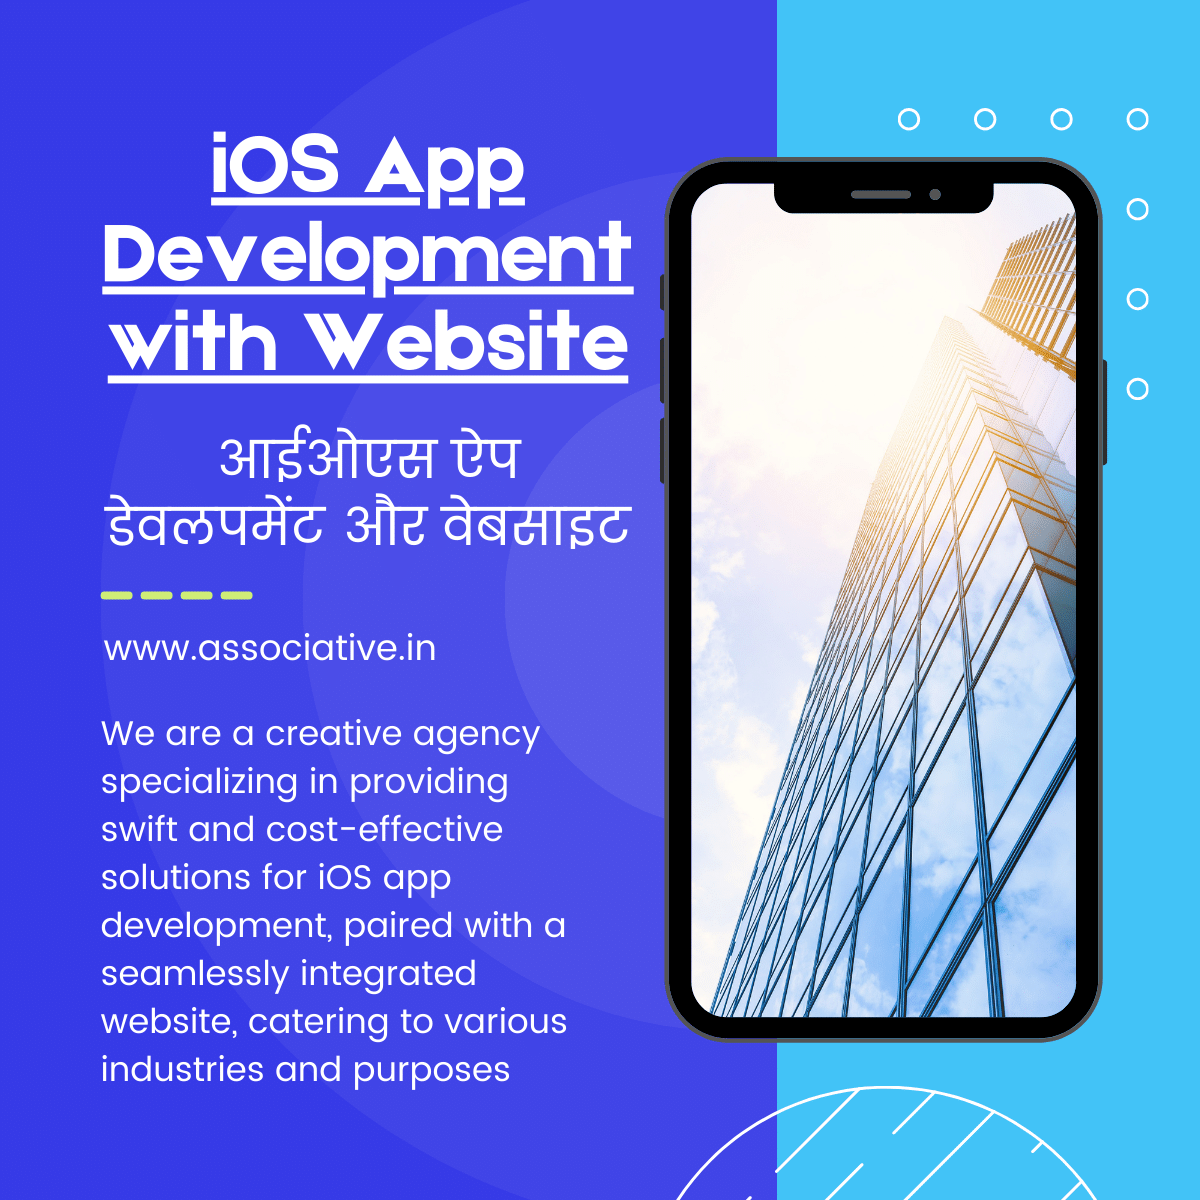 iOS App Development with Website आईओएस ऐप डेवलपमेंट और वेबसाइट